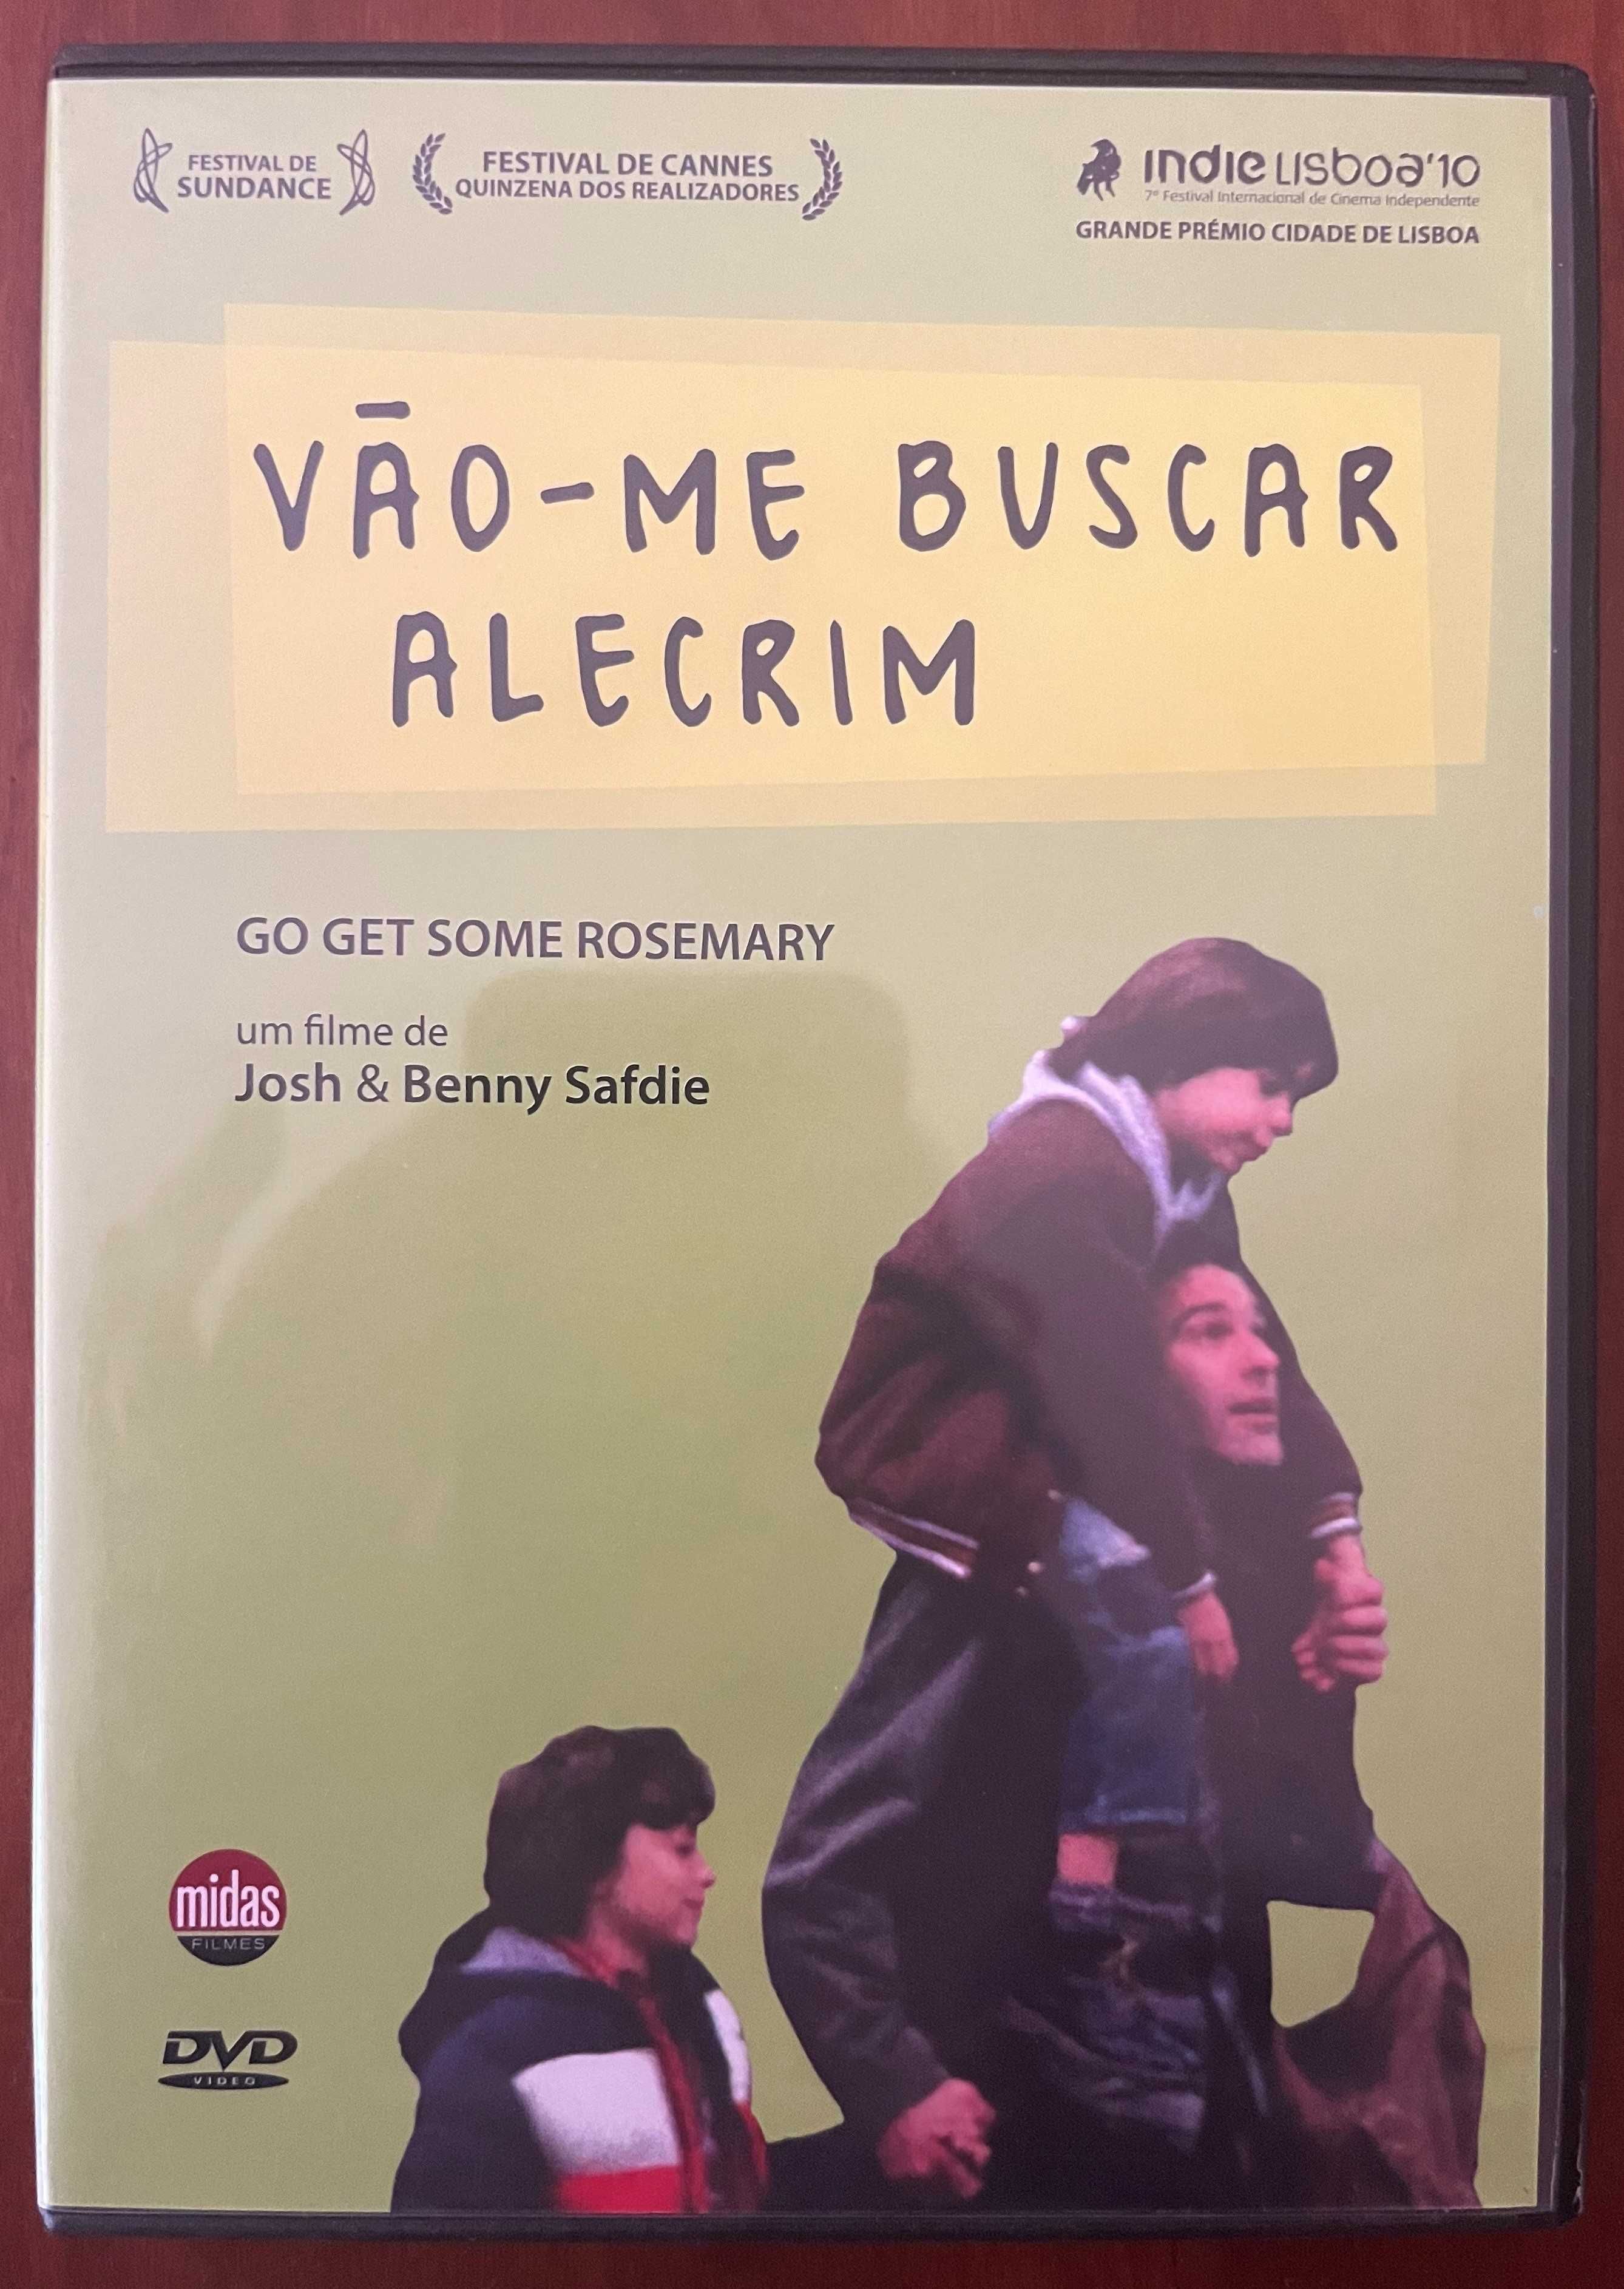 DVD "Vão-me buscar alecrim" de Josh & Benny Safdie